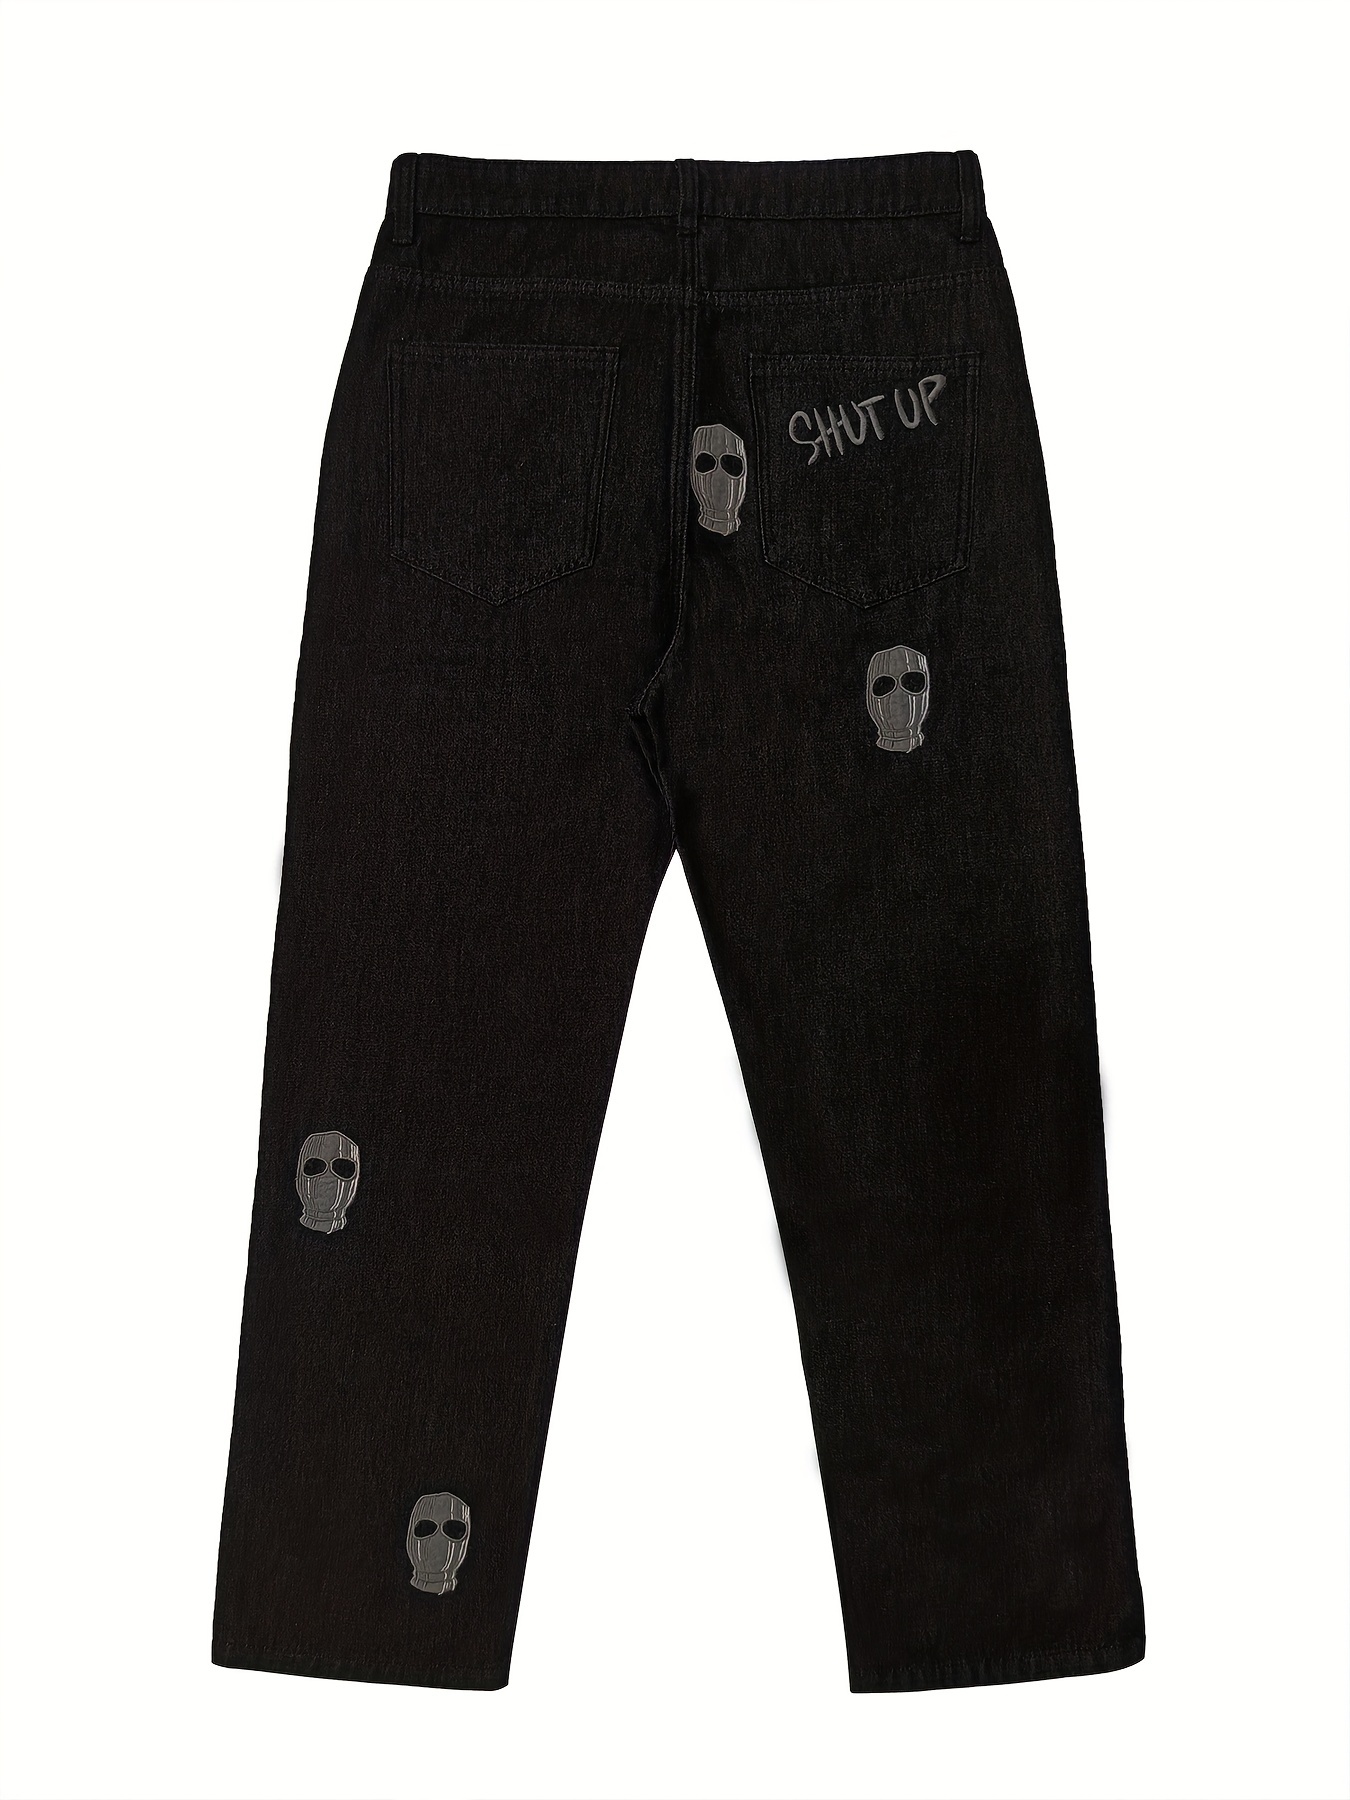 Men's Pants Design Clothing Fashion Black Revenge Embroidery Slim Fit Y2k  Pants Men's Jeans Hip Hop Clothing Casual Pants Denim